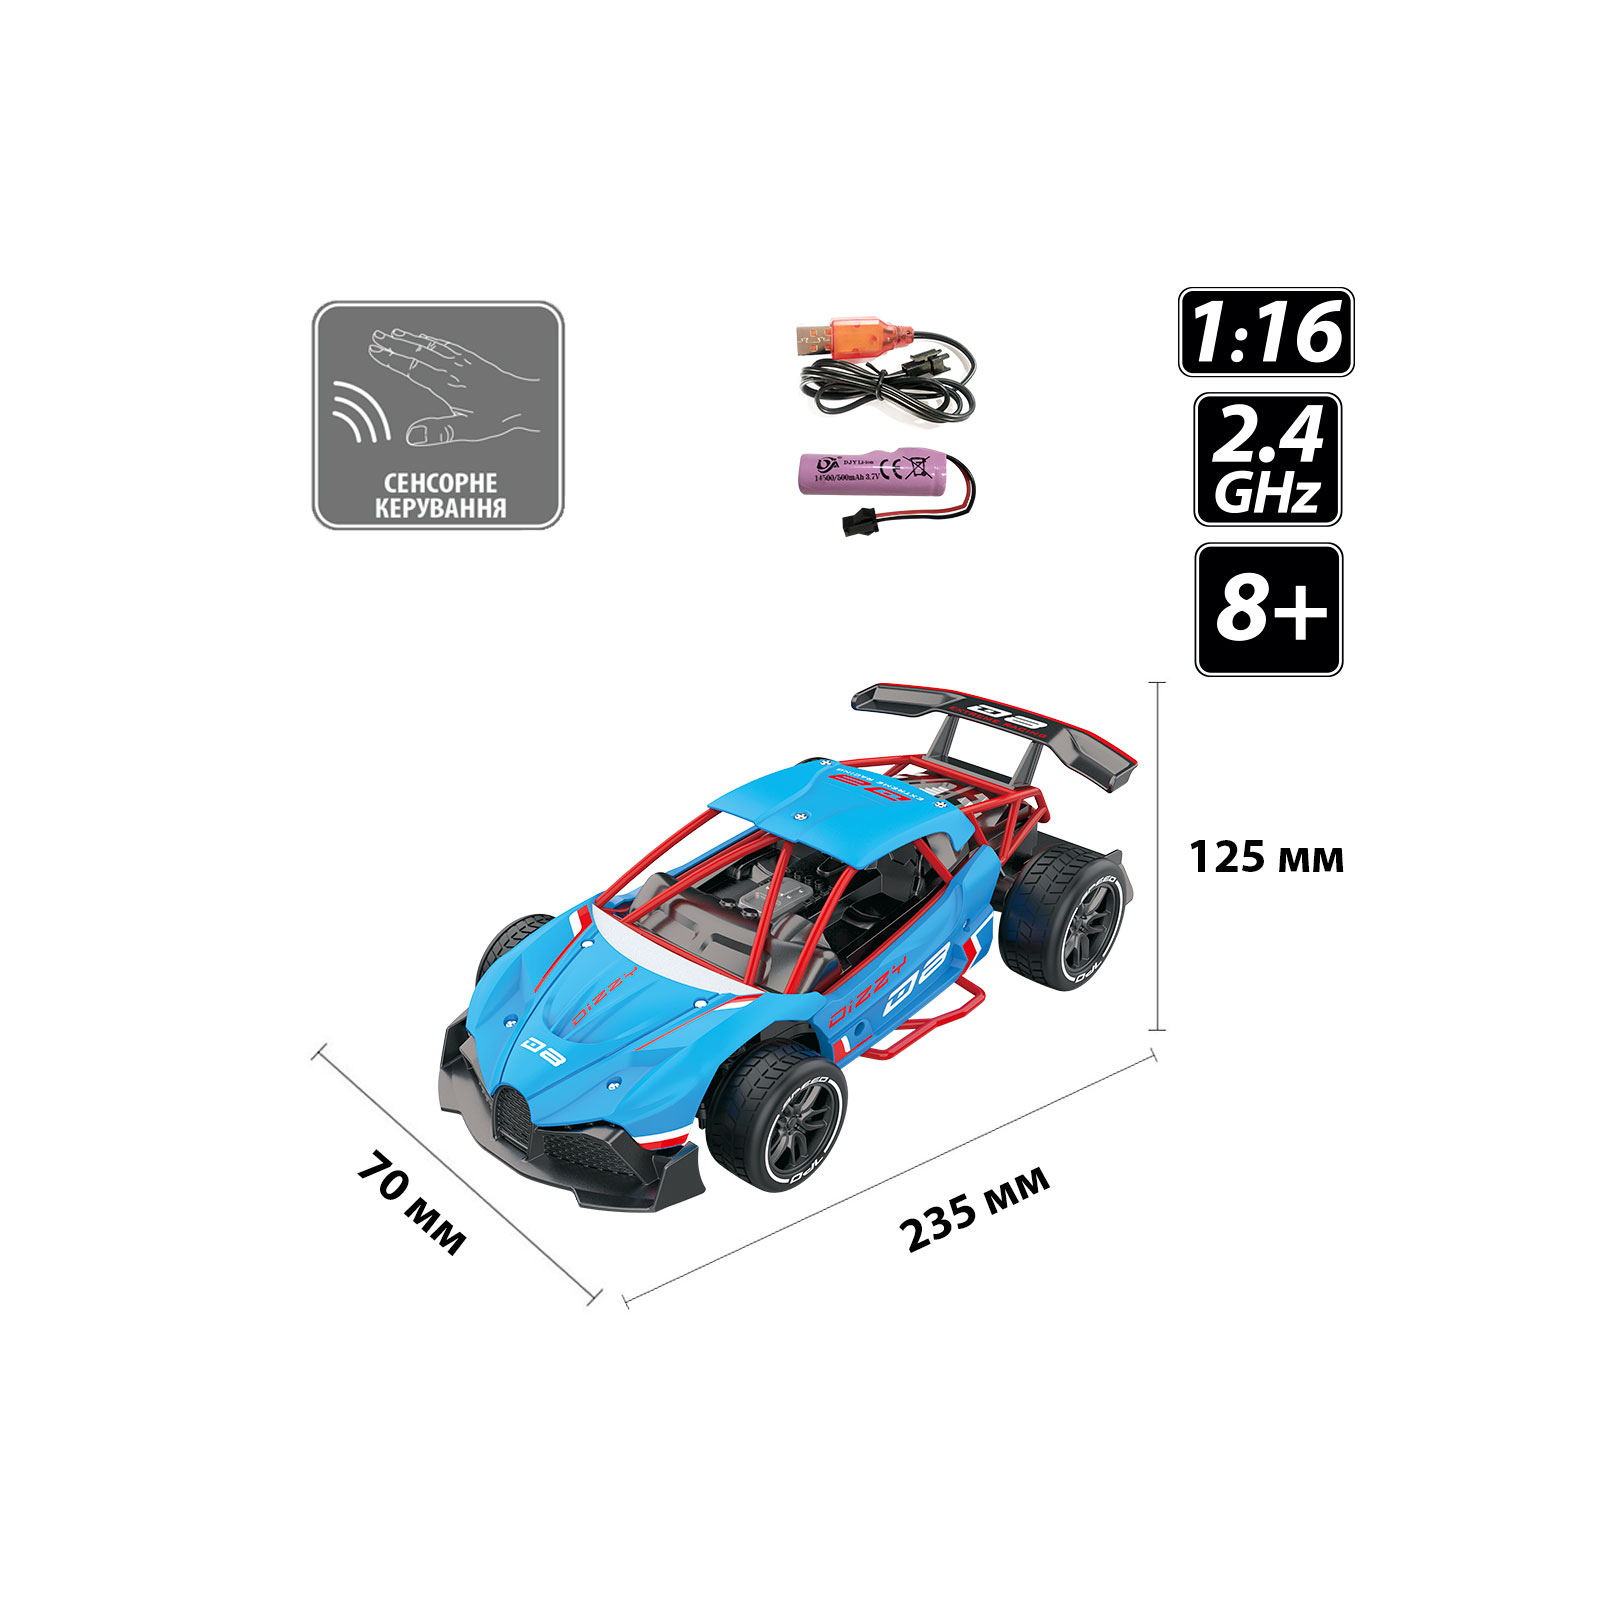 Радиоуправляемая игрушка Sulong Toys Gesture sensing и с сенсорным управлением – Dizzy (голубой, 1:16) (SL-285RHB) изображение 5